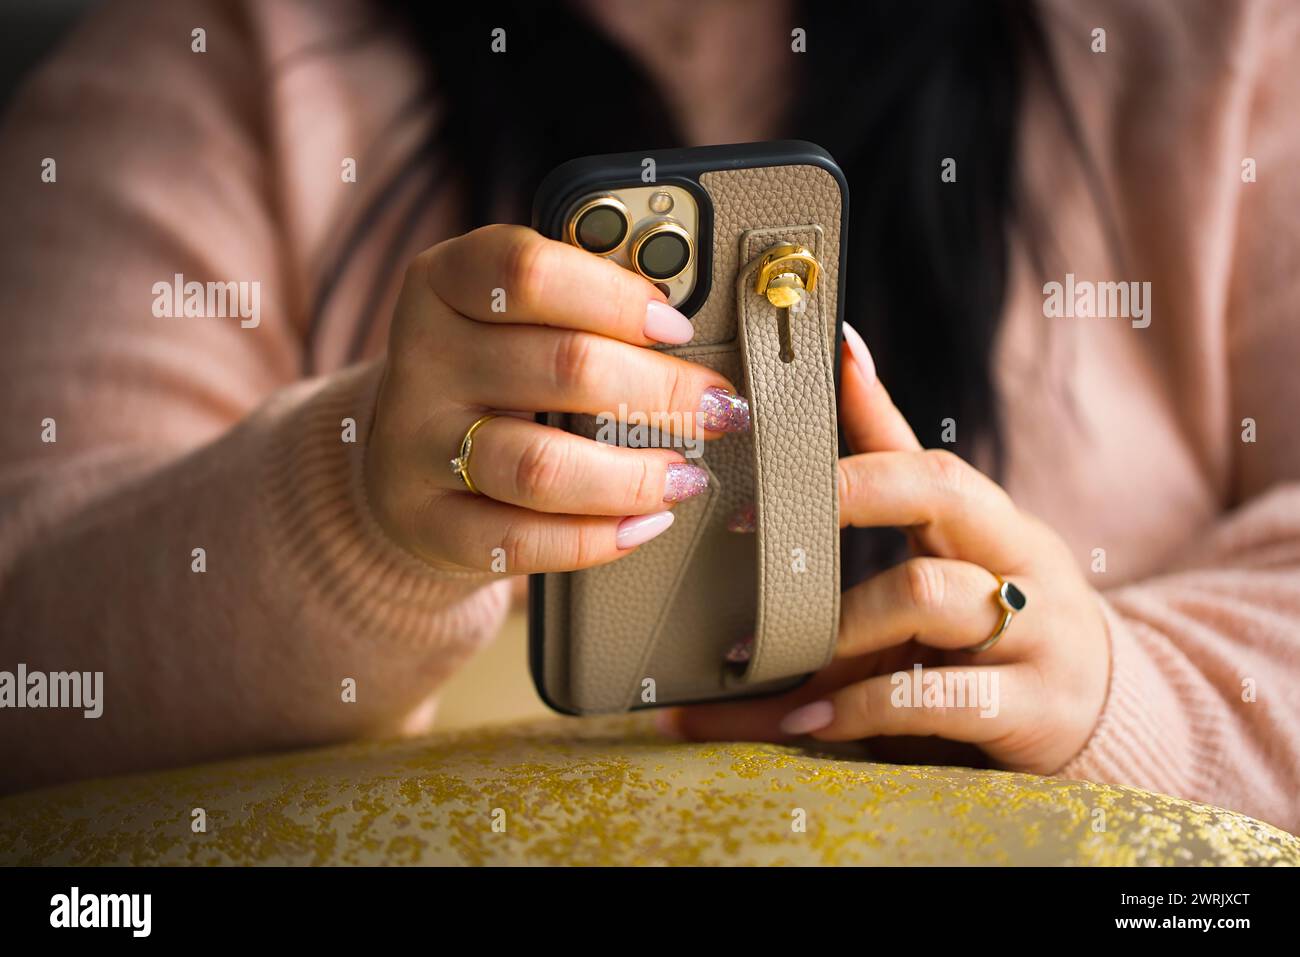 Gros plan des mains d'une femme tenant un smartphone. La femme a de superbes ongles en gel rose, méticuleusement peints avec deux ongles ornés de stylets Banque D'Images